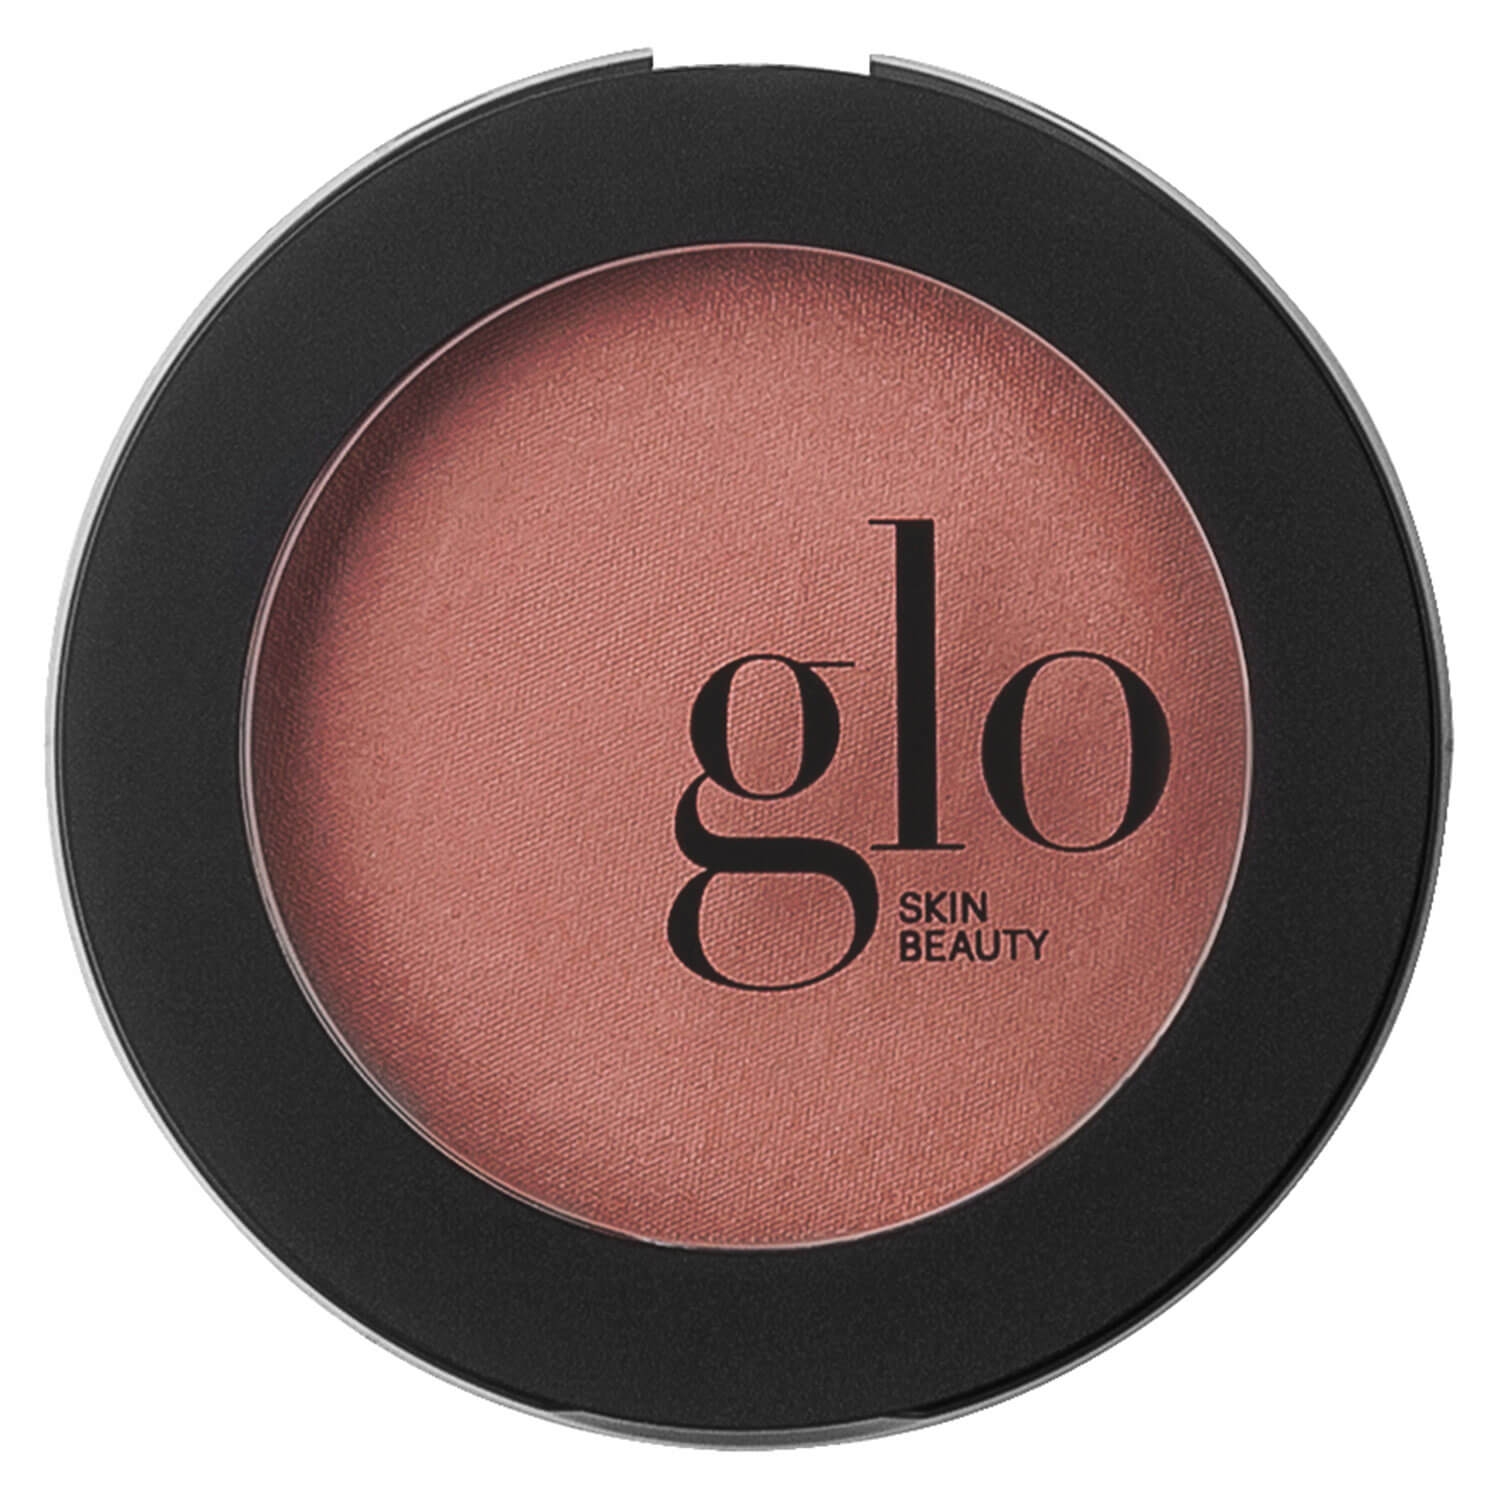 Produktbild von Glo Skin Beauty Blush - Blush Spice Berry